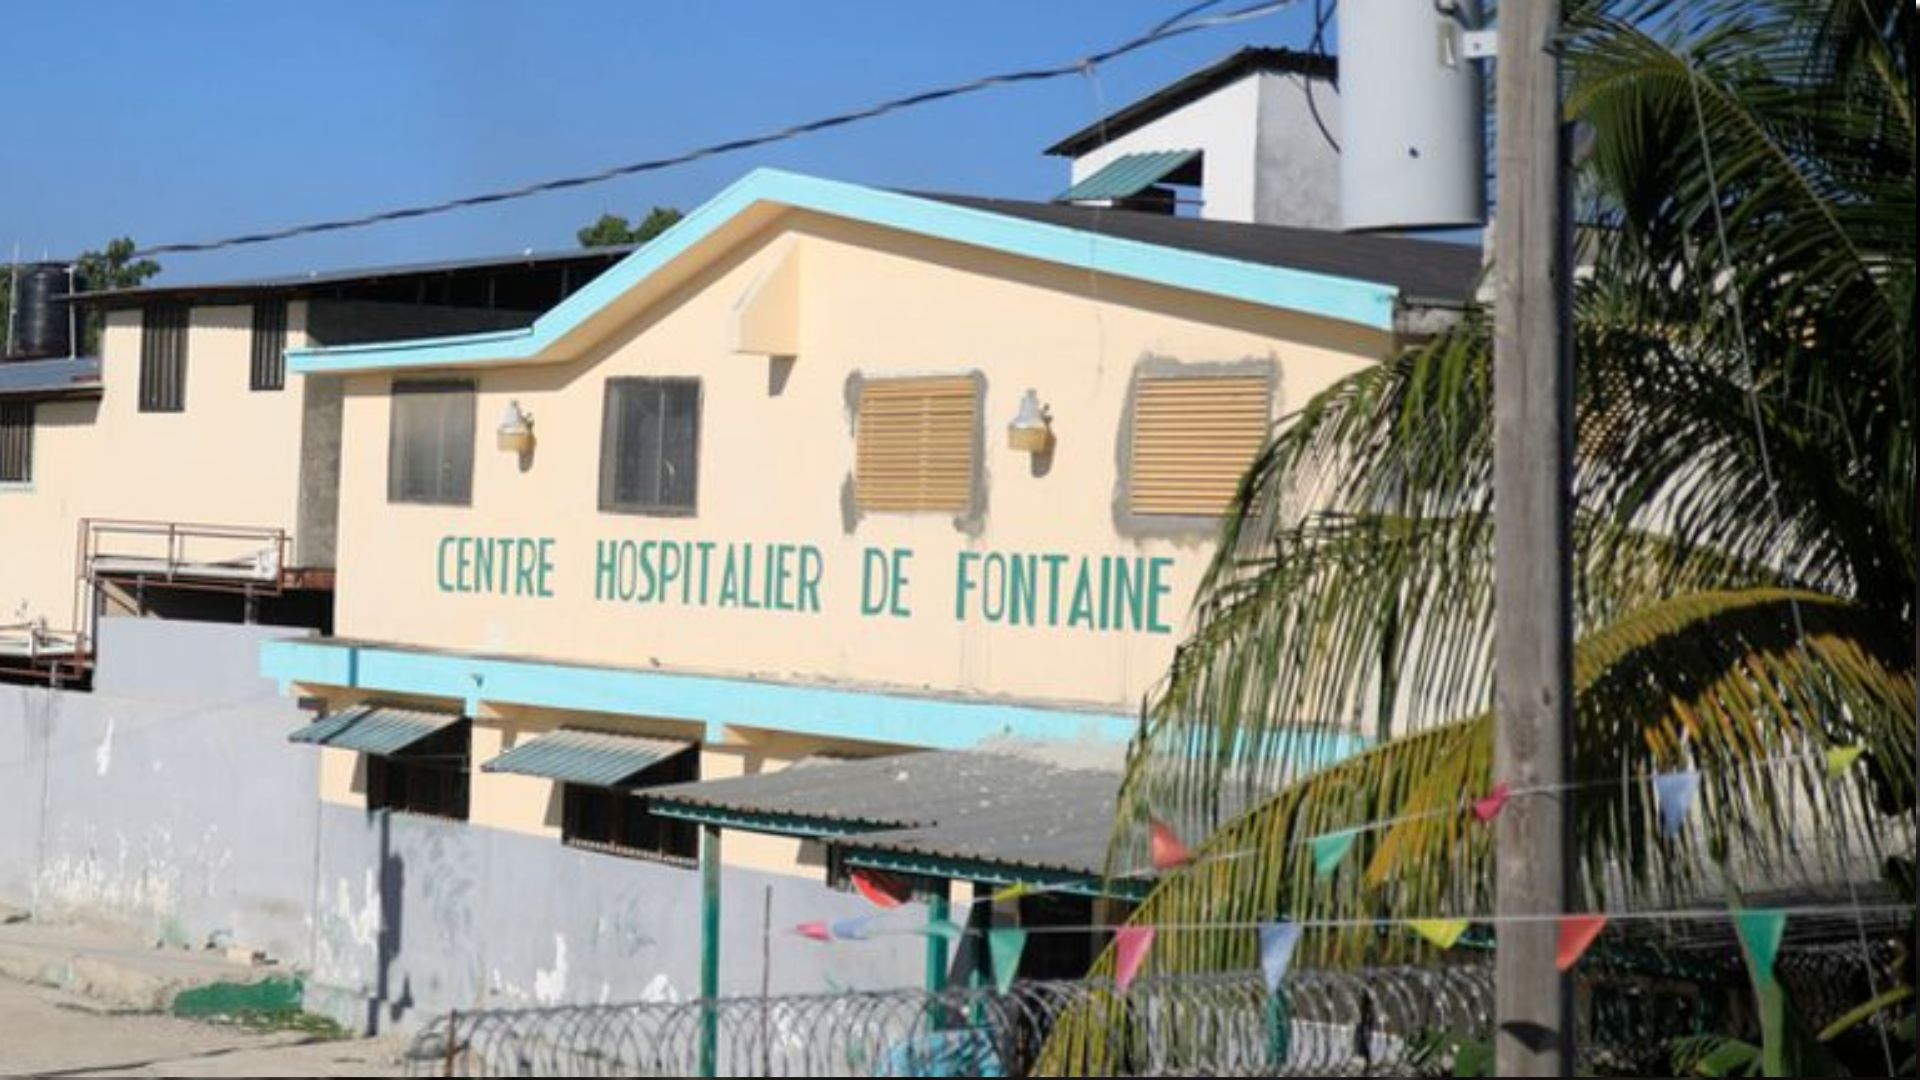 हैती में एक गिरोह के सशस्त्र सदस्यों ने अस्पताल को घेरा, पुलिस ने लोगों को सुरक्षित निकाला 